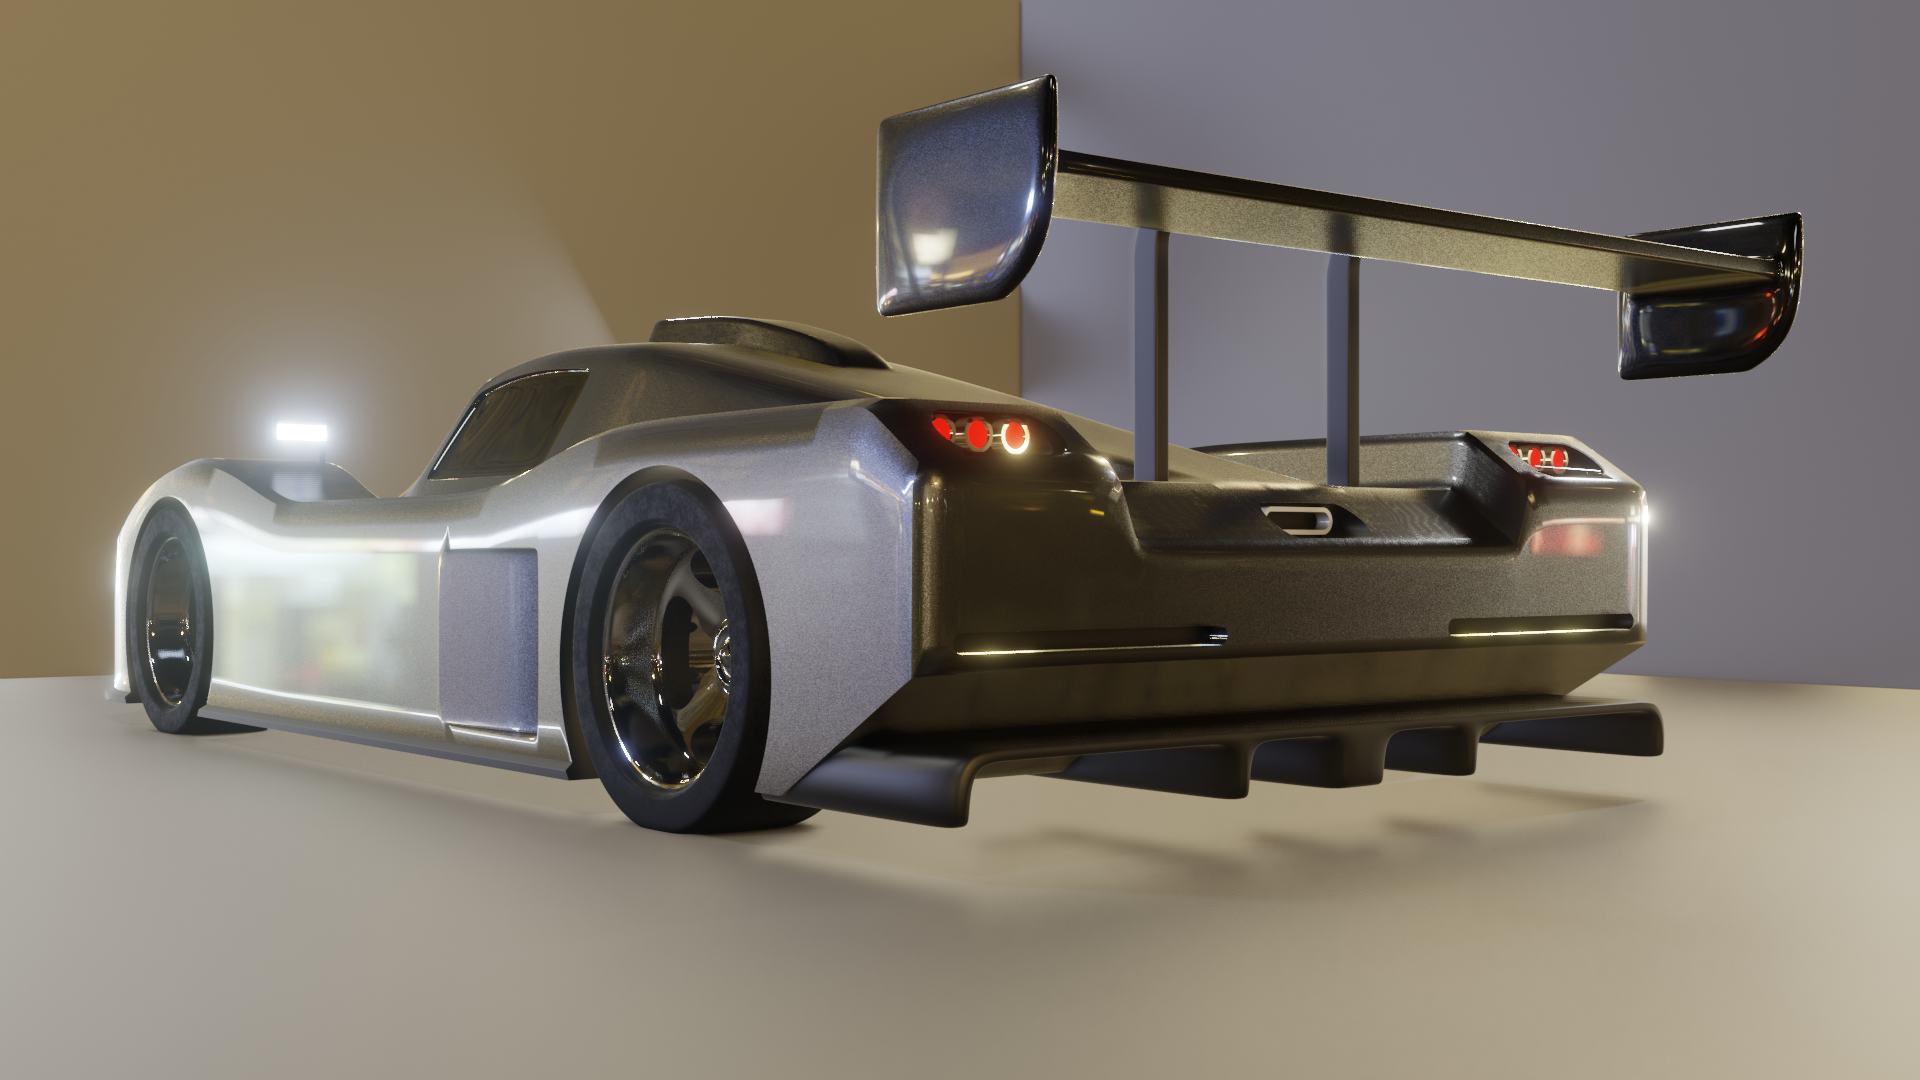 Le Mans Race Car preview image 4